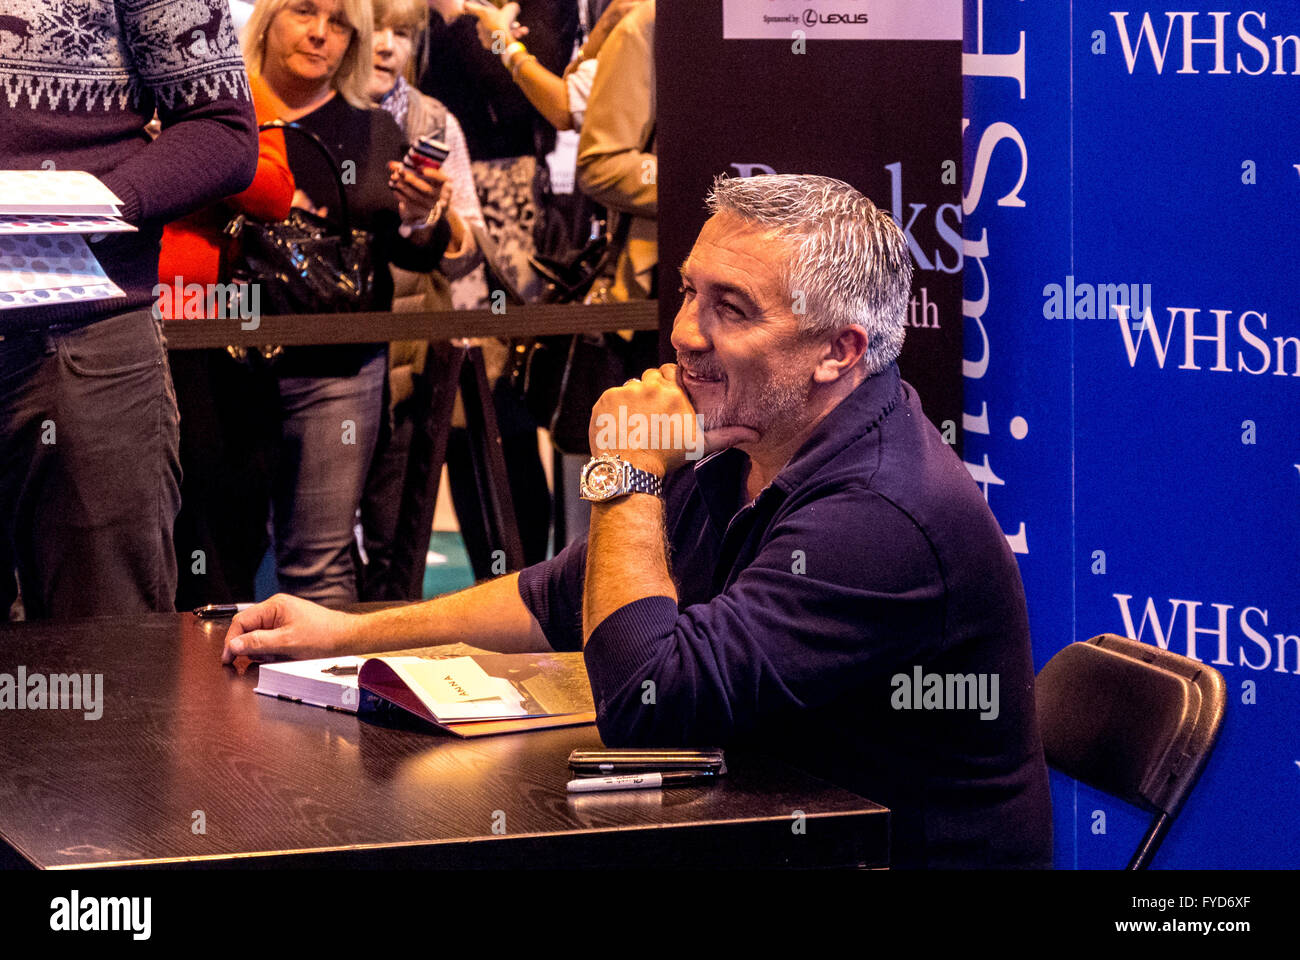 Paul Hollywood Celebrity aparición en W.H. Evento de firma del libro de Smith, Reino Unido. Foto de stock